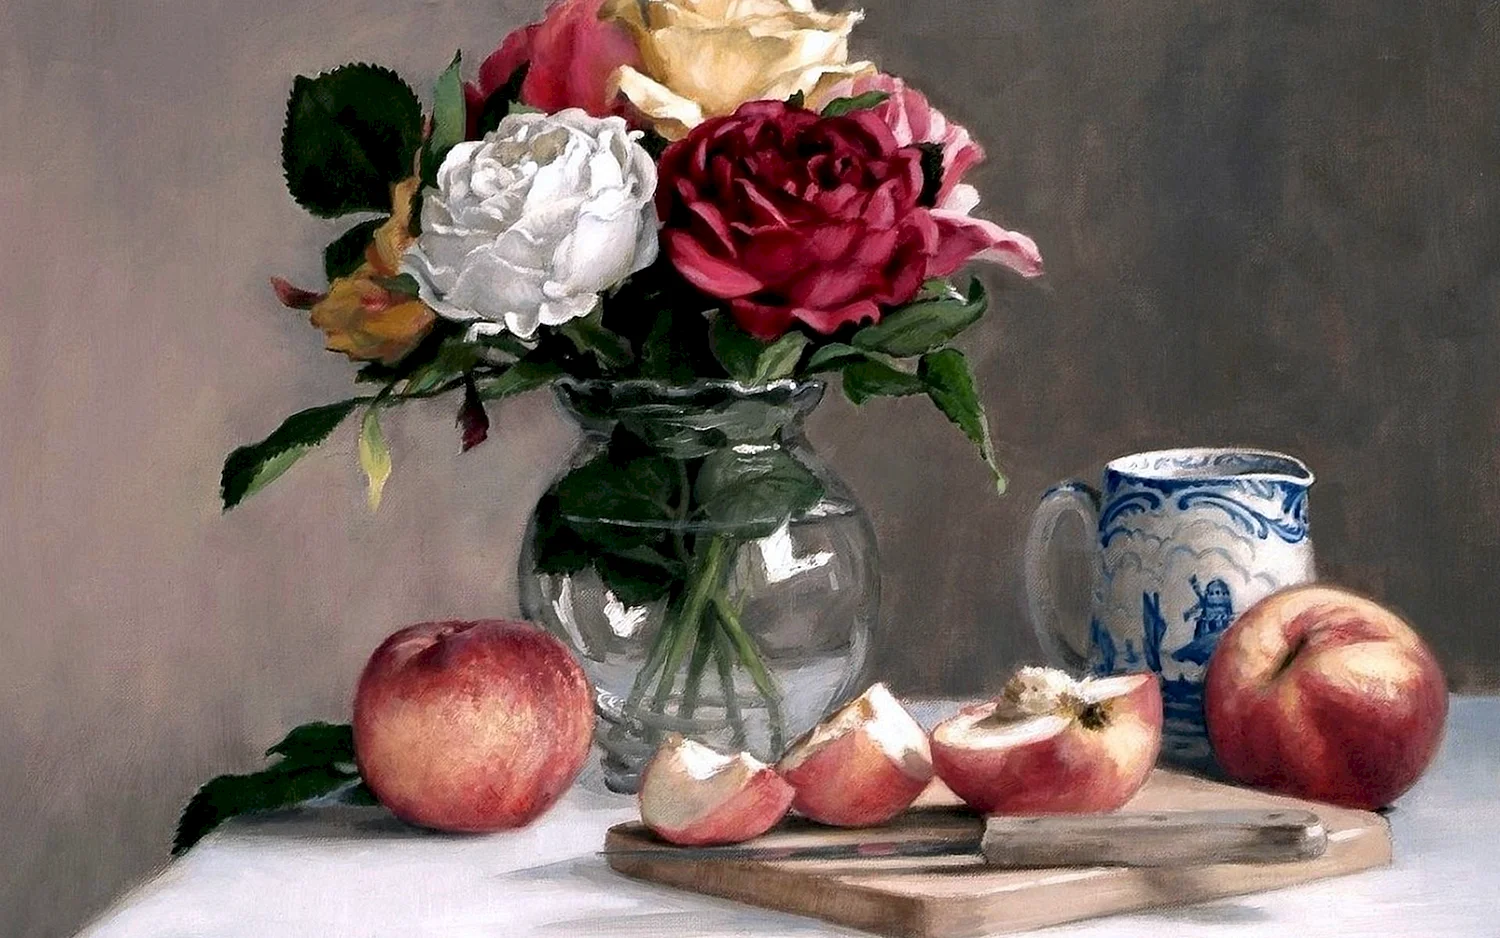 «Яблоки и цветы» (1895/1896)